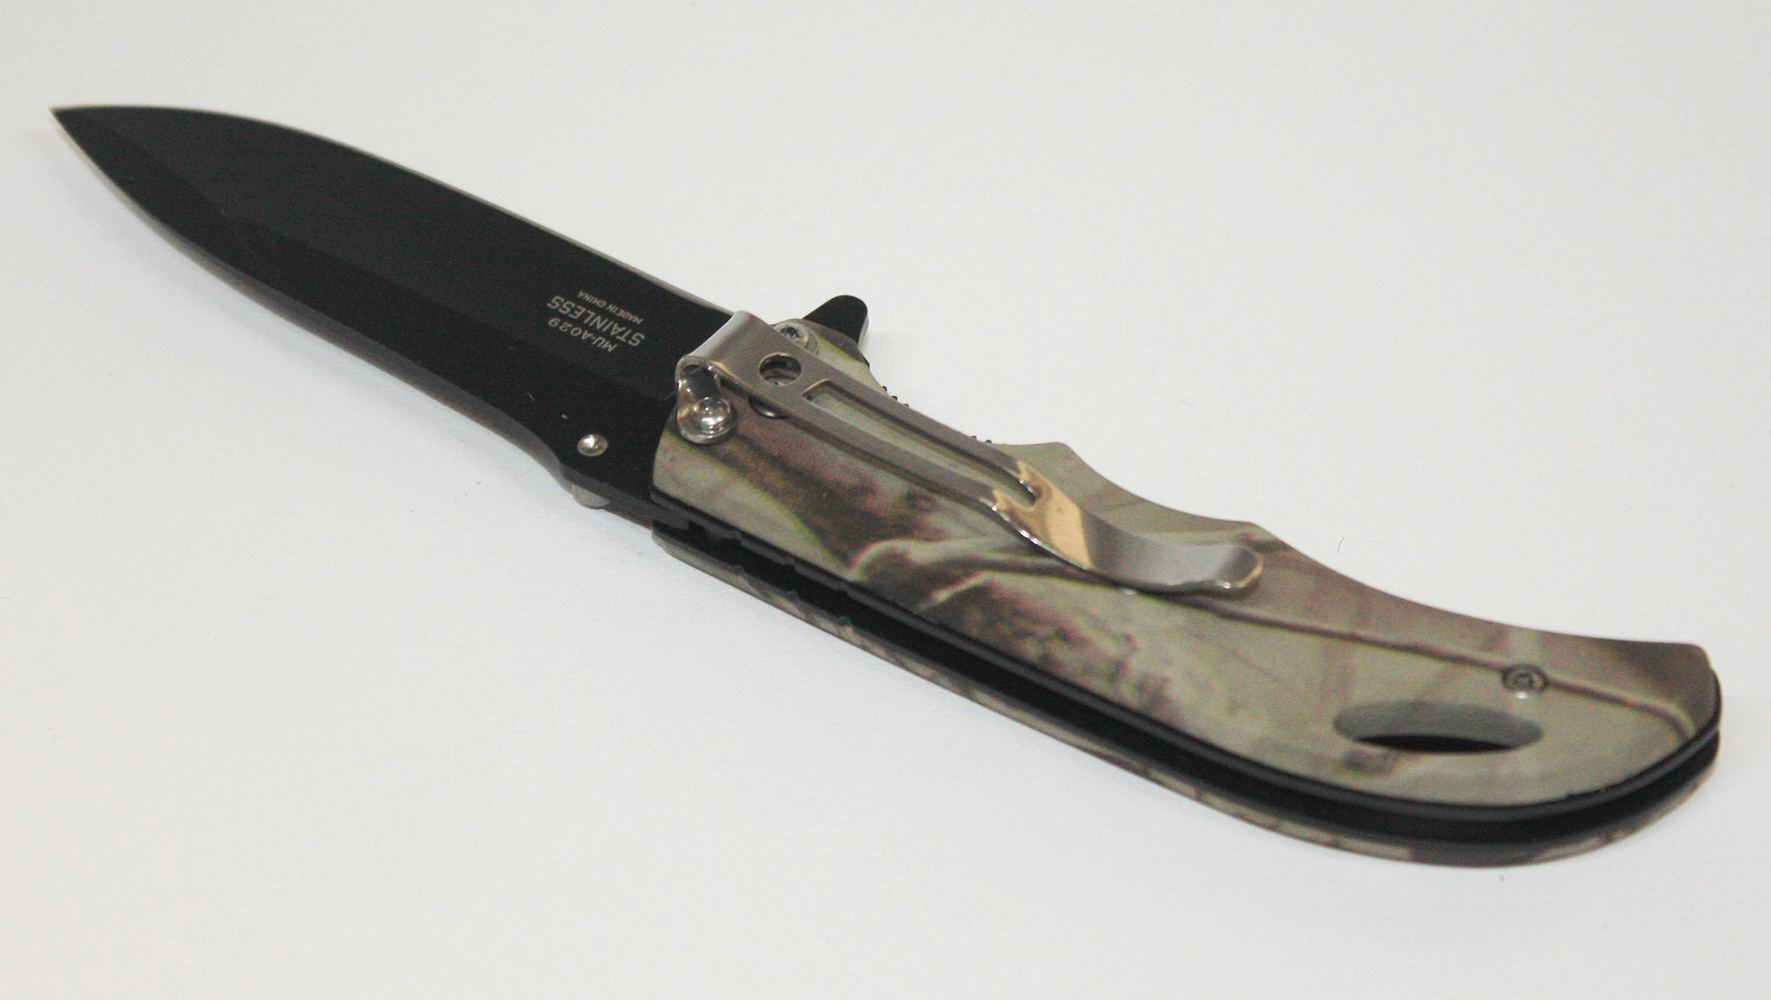 Master USA Klappmesser Taschenmesser Messer MU-A029 Serie Wald Camo Design